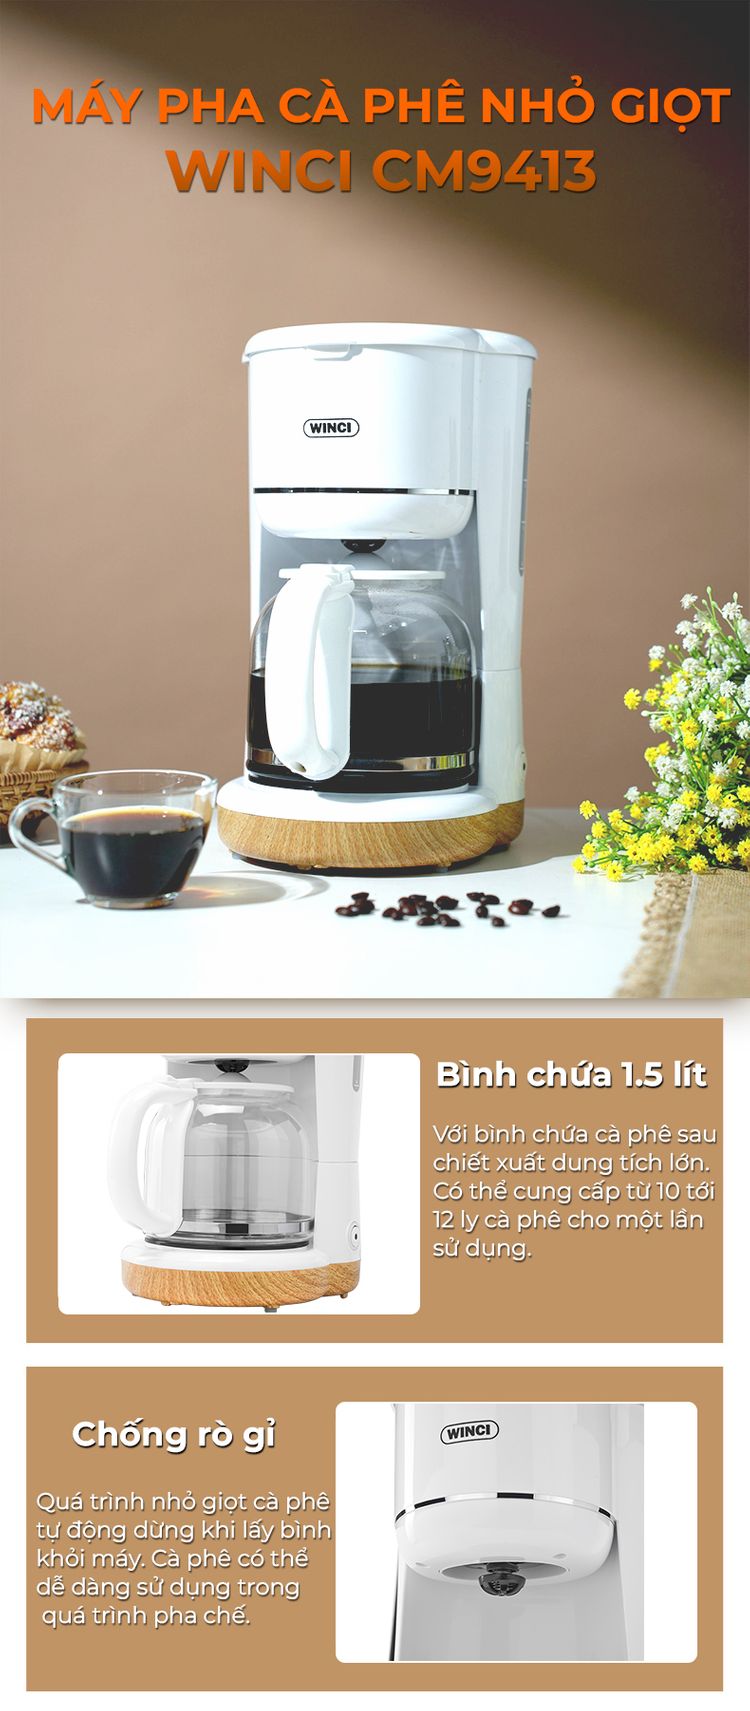 Máy pha cà phê Drip Winci CM9413 với bình chứa 1,5 lít và khả năng chống rò gỉ